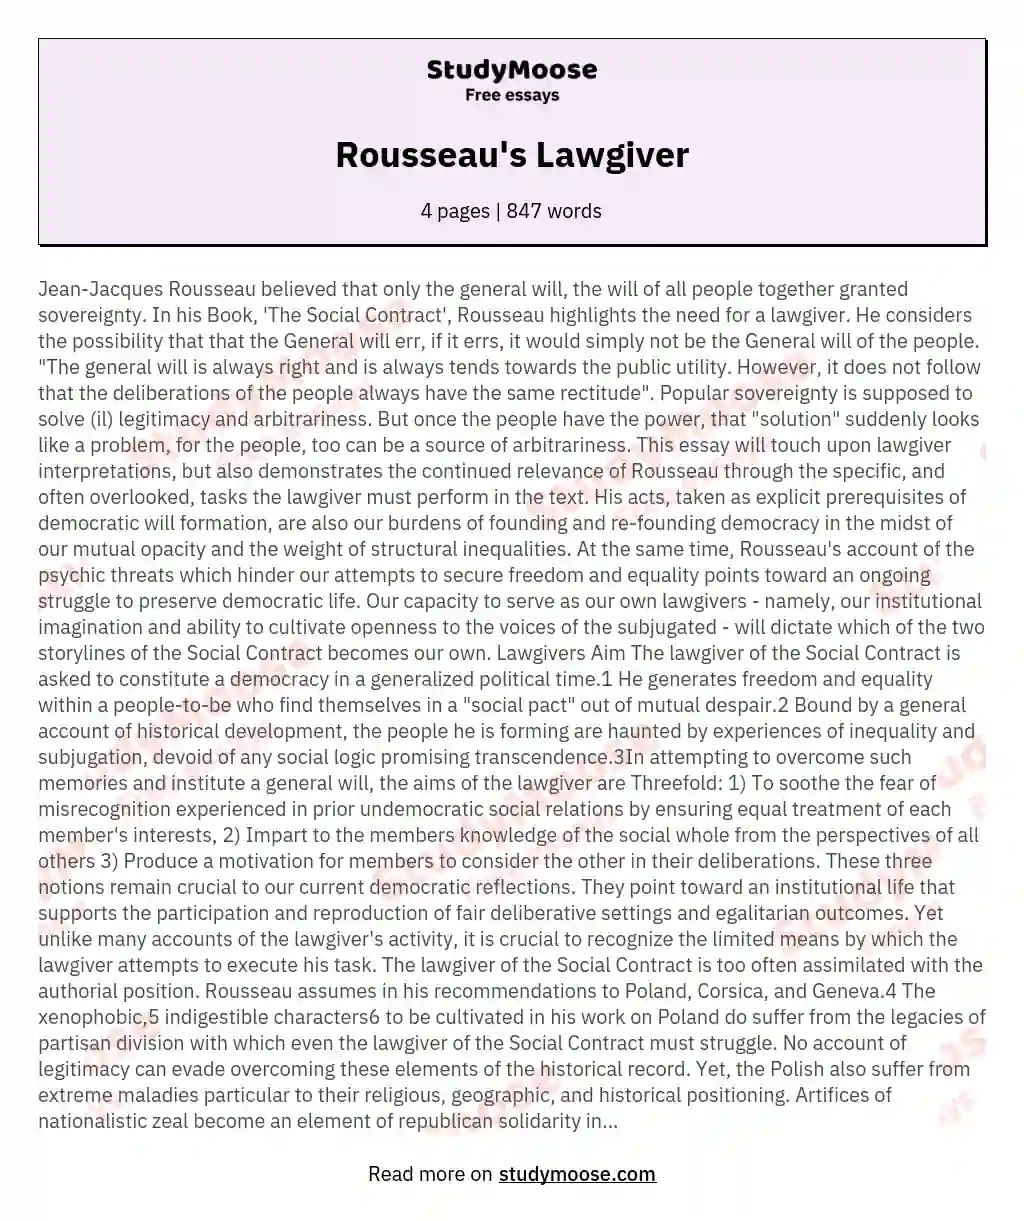 Rousseau's Lawgiver essay